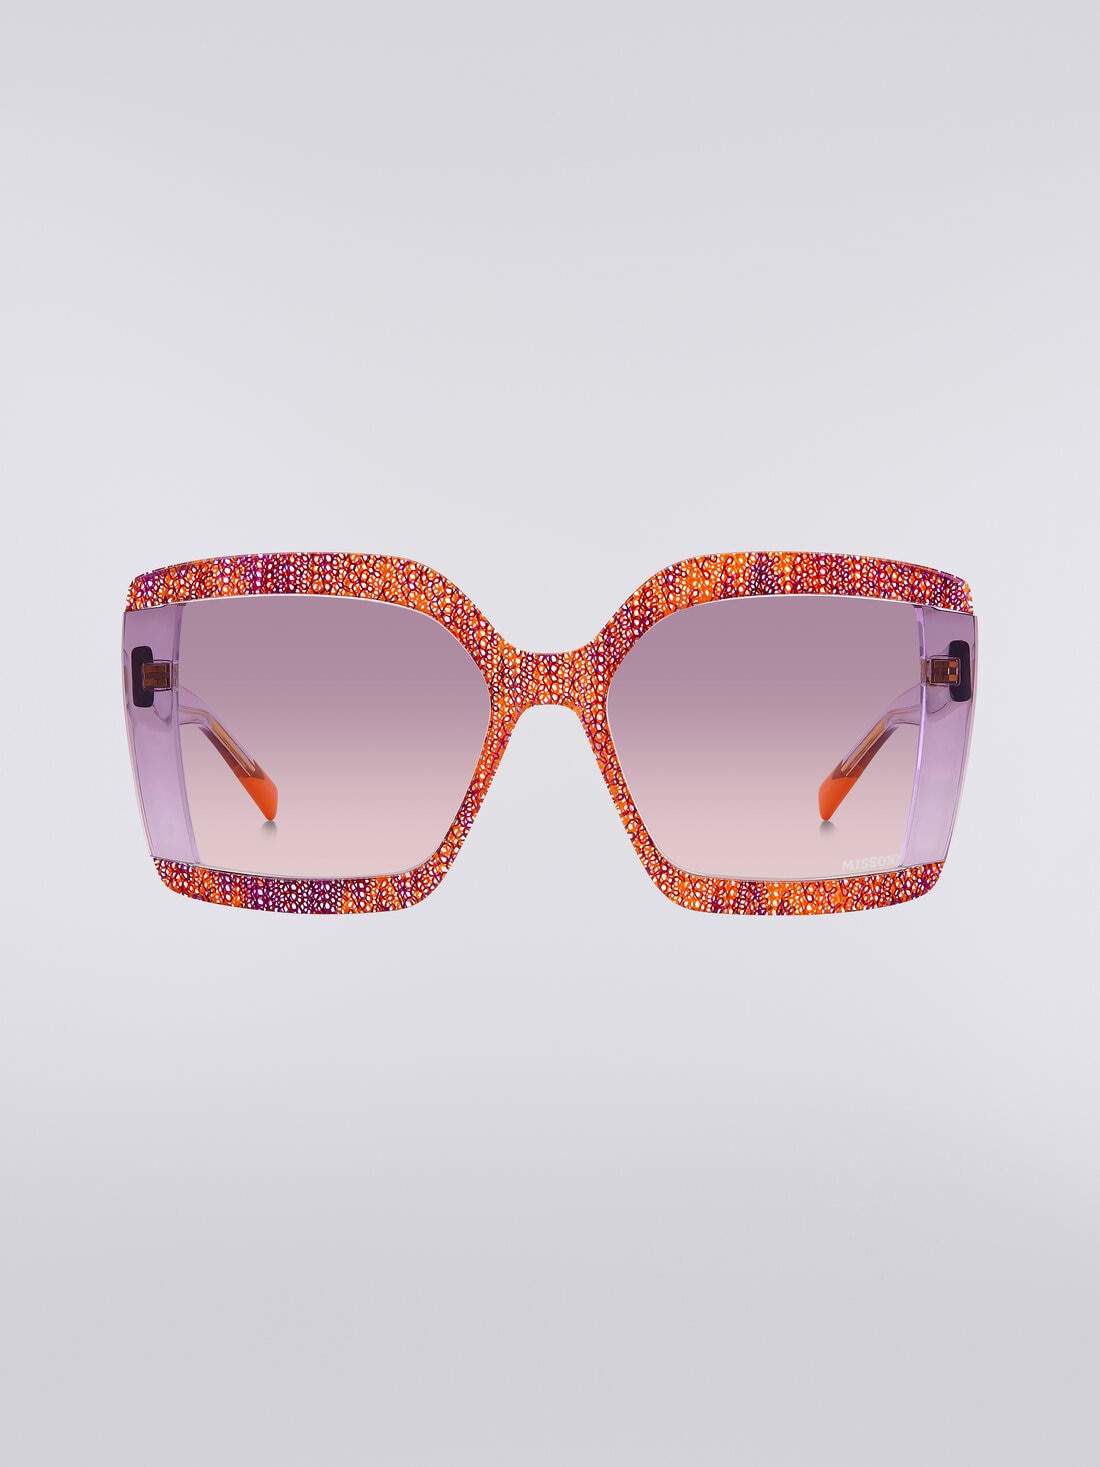 Kantige Sonnenbrille mit Stoffeinsätzen, Mehrfarbig  - 8053147194974 - 0